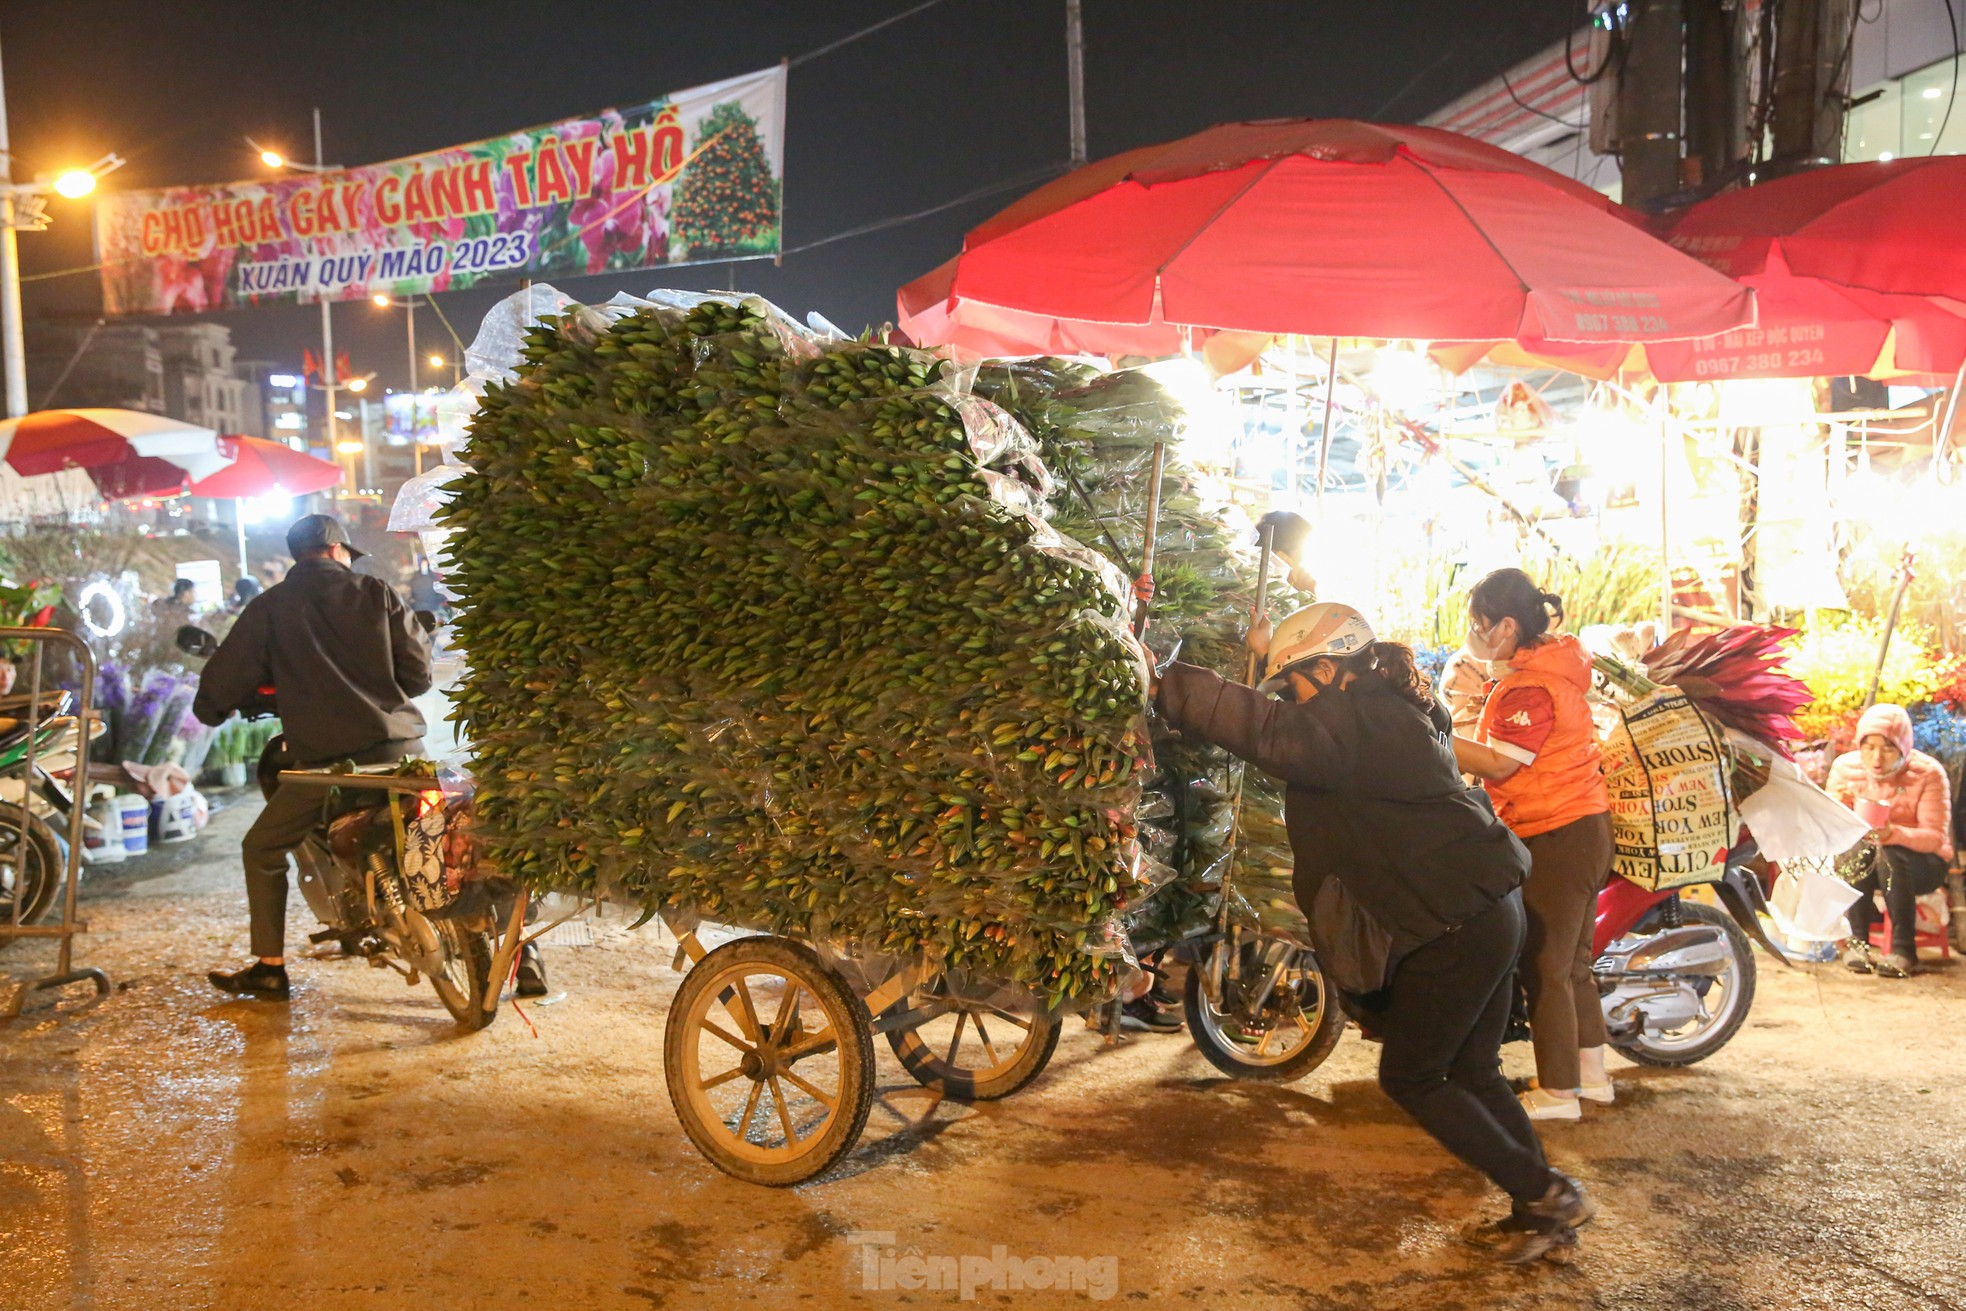 Đêm không ngủ ở chợ hoa lớn nhất Hà Nội giáp Tết - Ảnh 1.